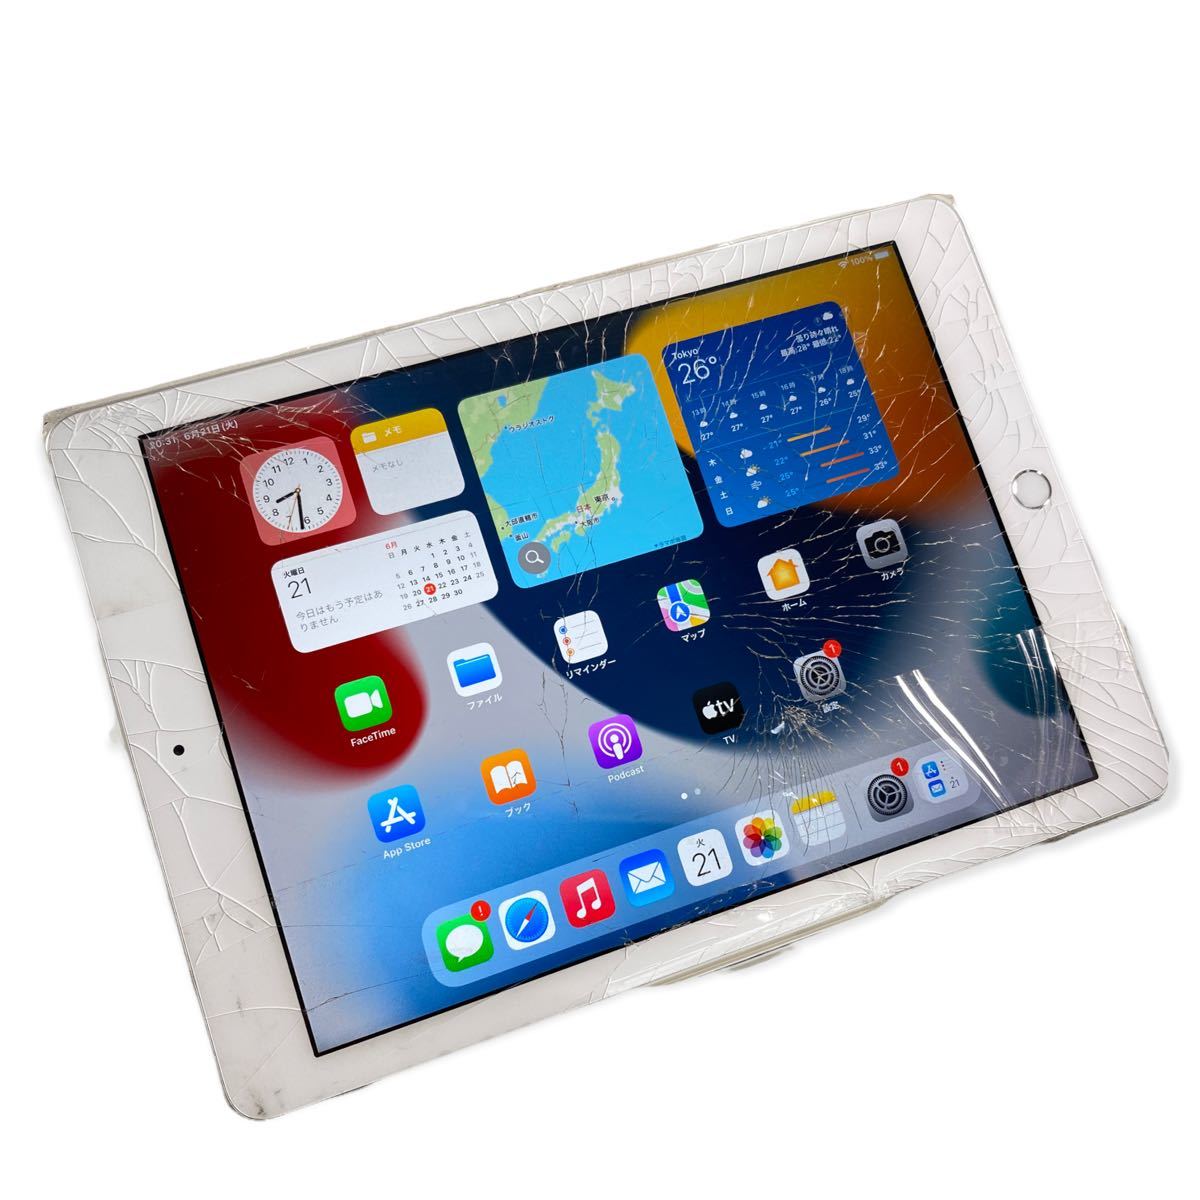 ☆Apple iPad 第6世代 MR7G2J/A ( A1893 ) Wi-Fi 32GB シルバー